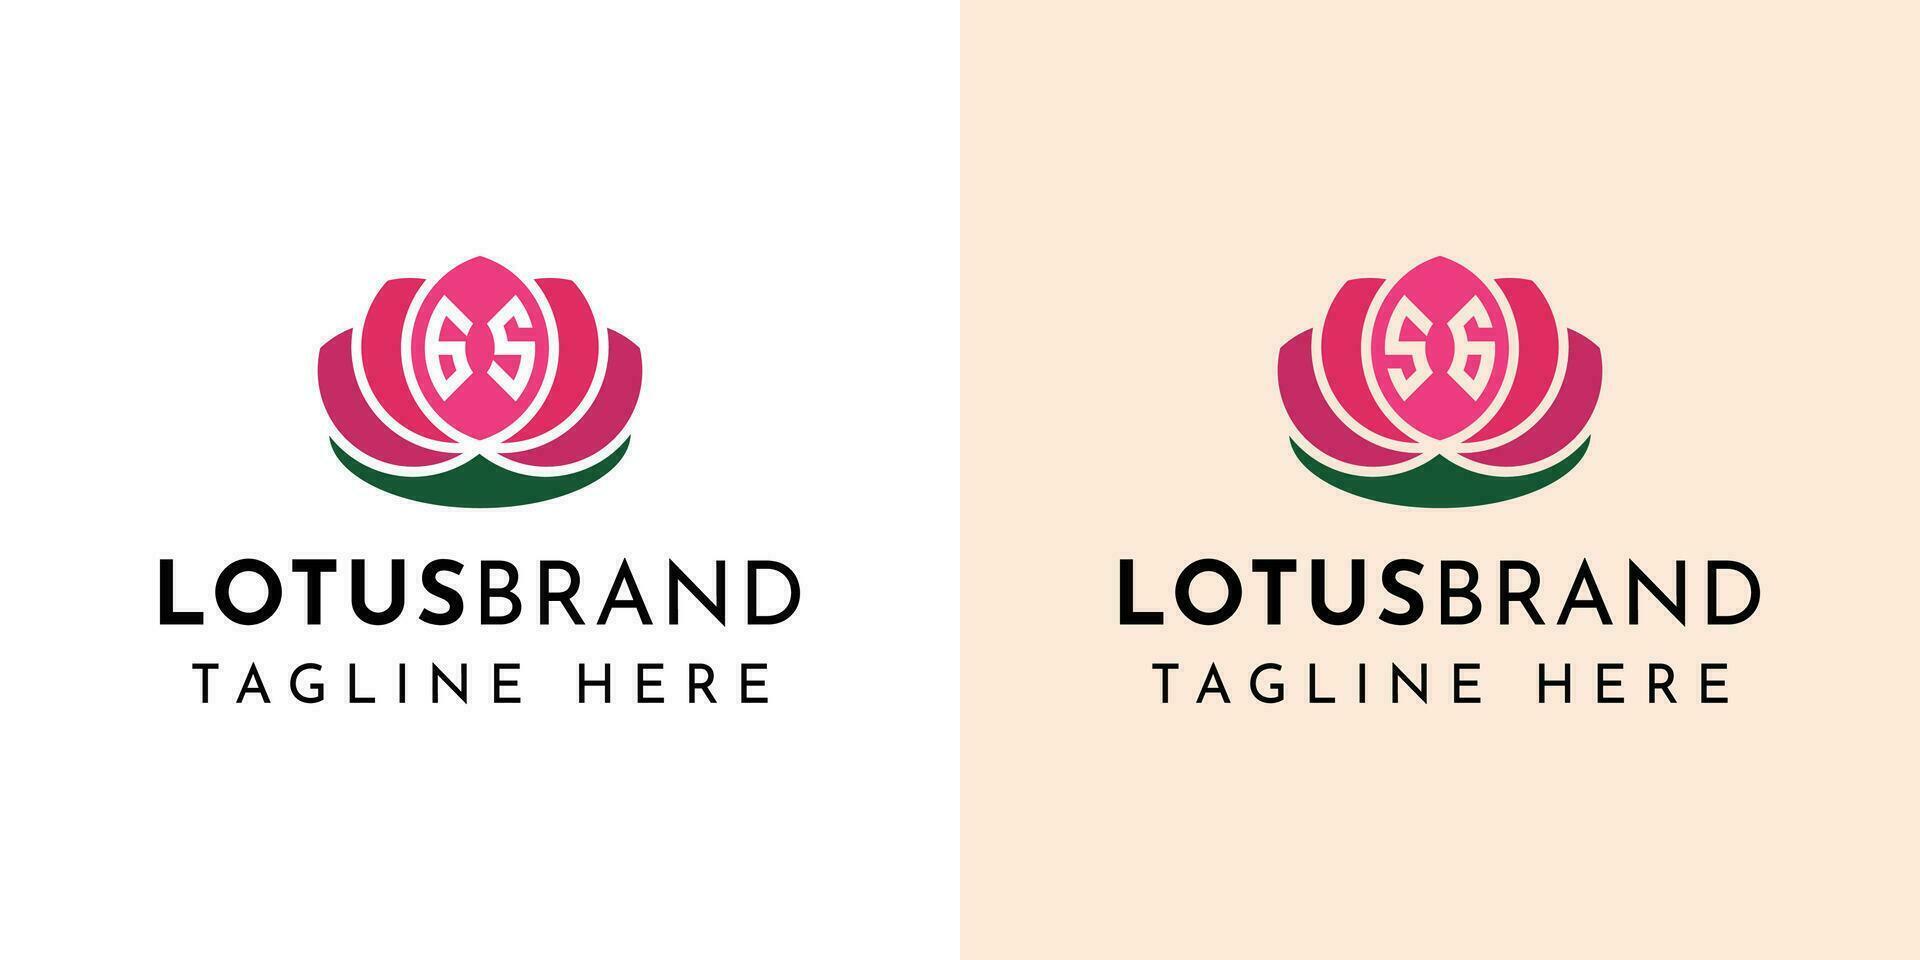 carta gs e sg lótus logotipo definir, adequado para o negócio relacionado para lótus flores com gs ou sg iniciais. vetor